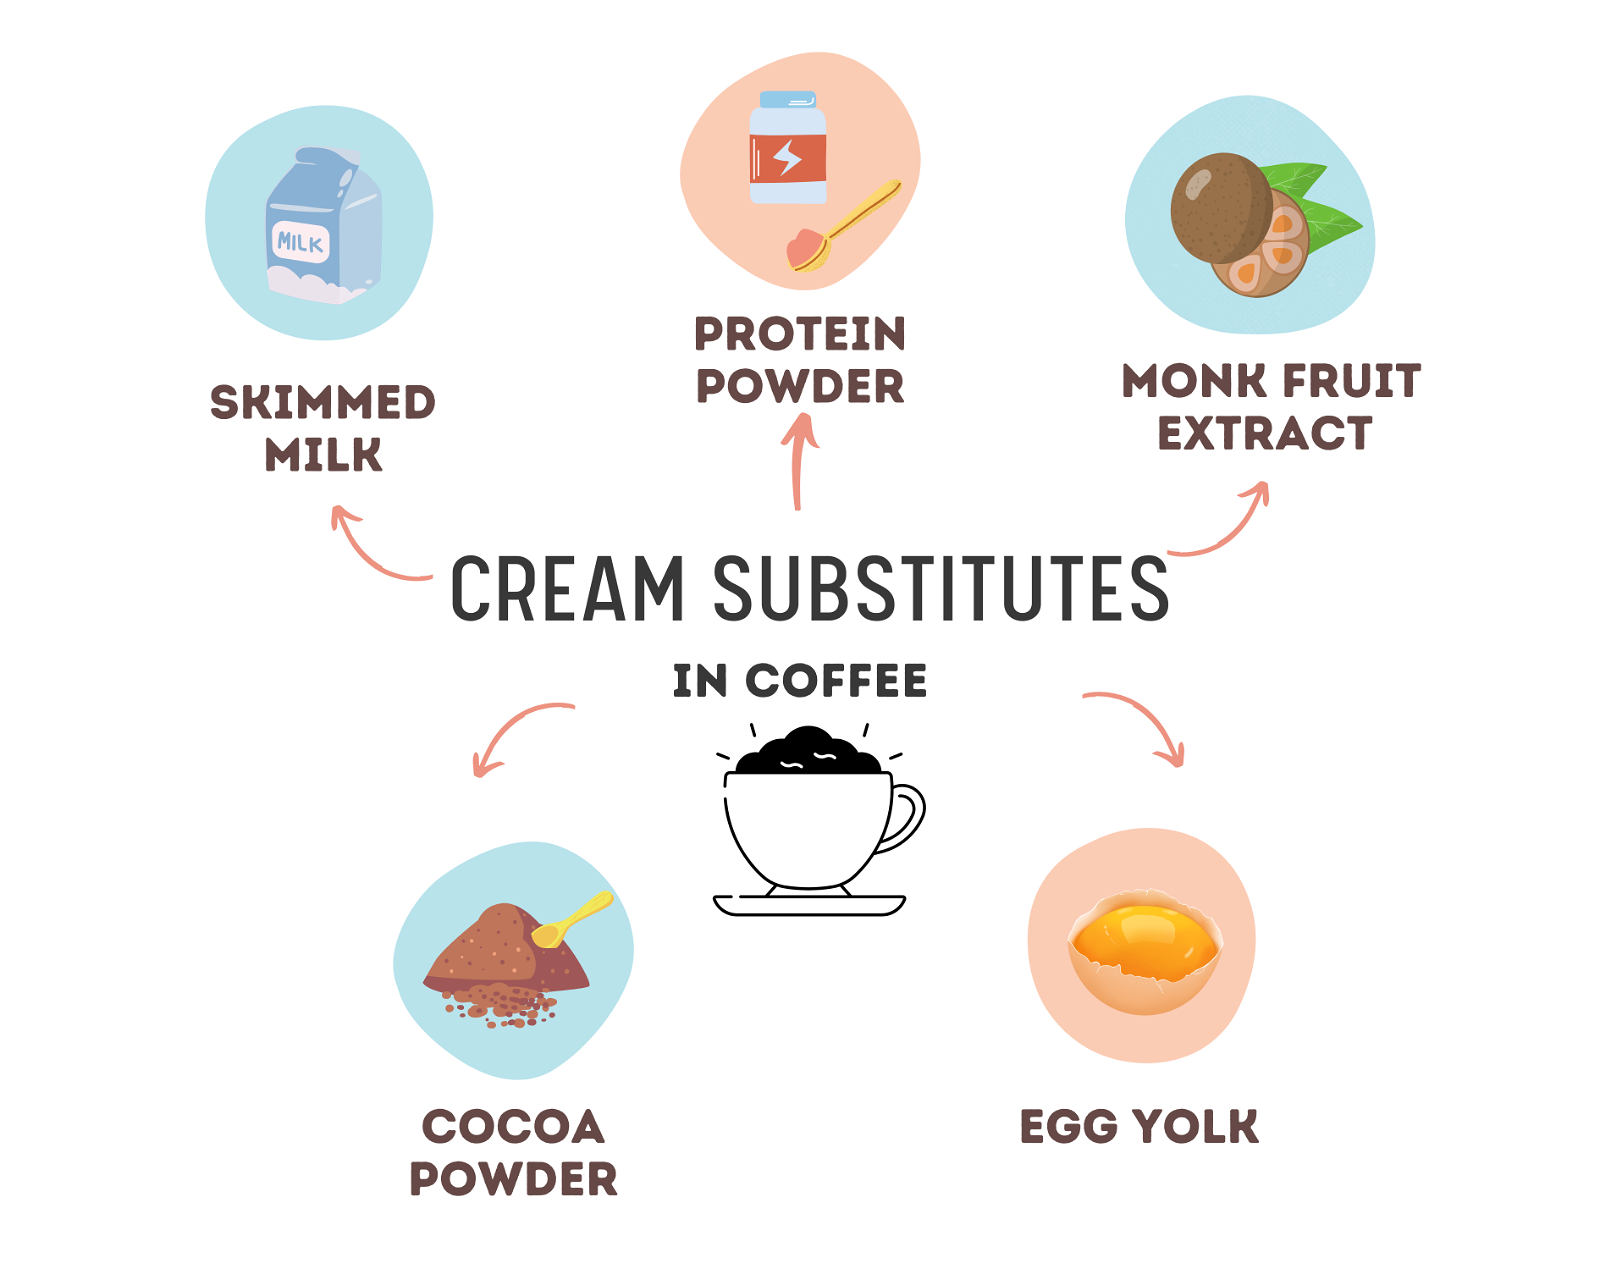 Cream substitutes in coffee